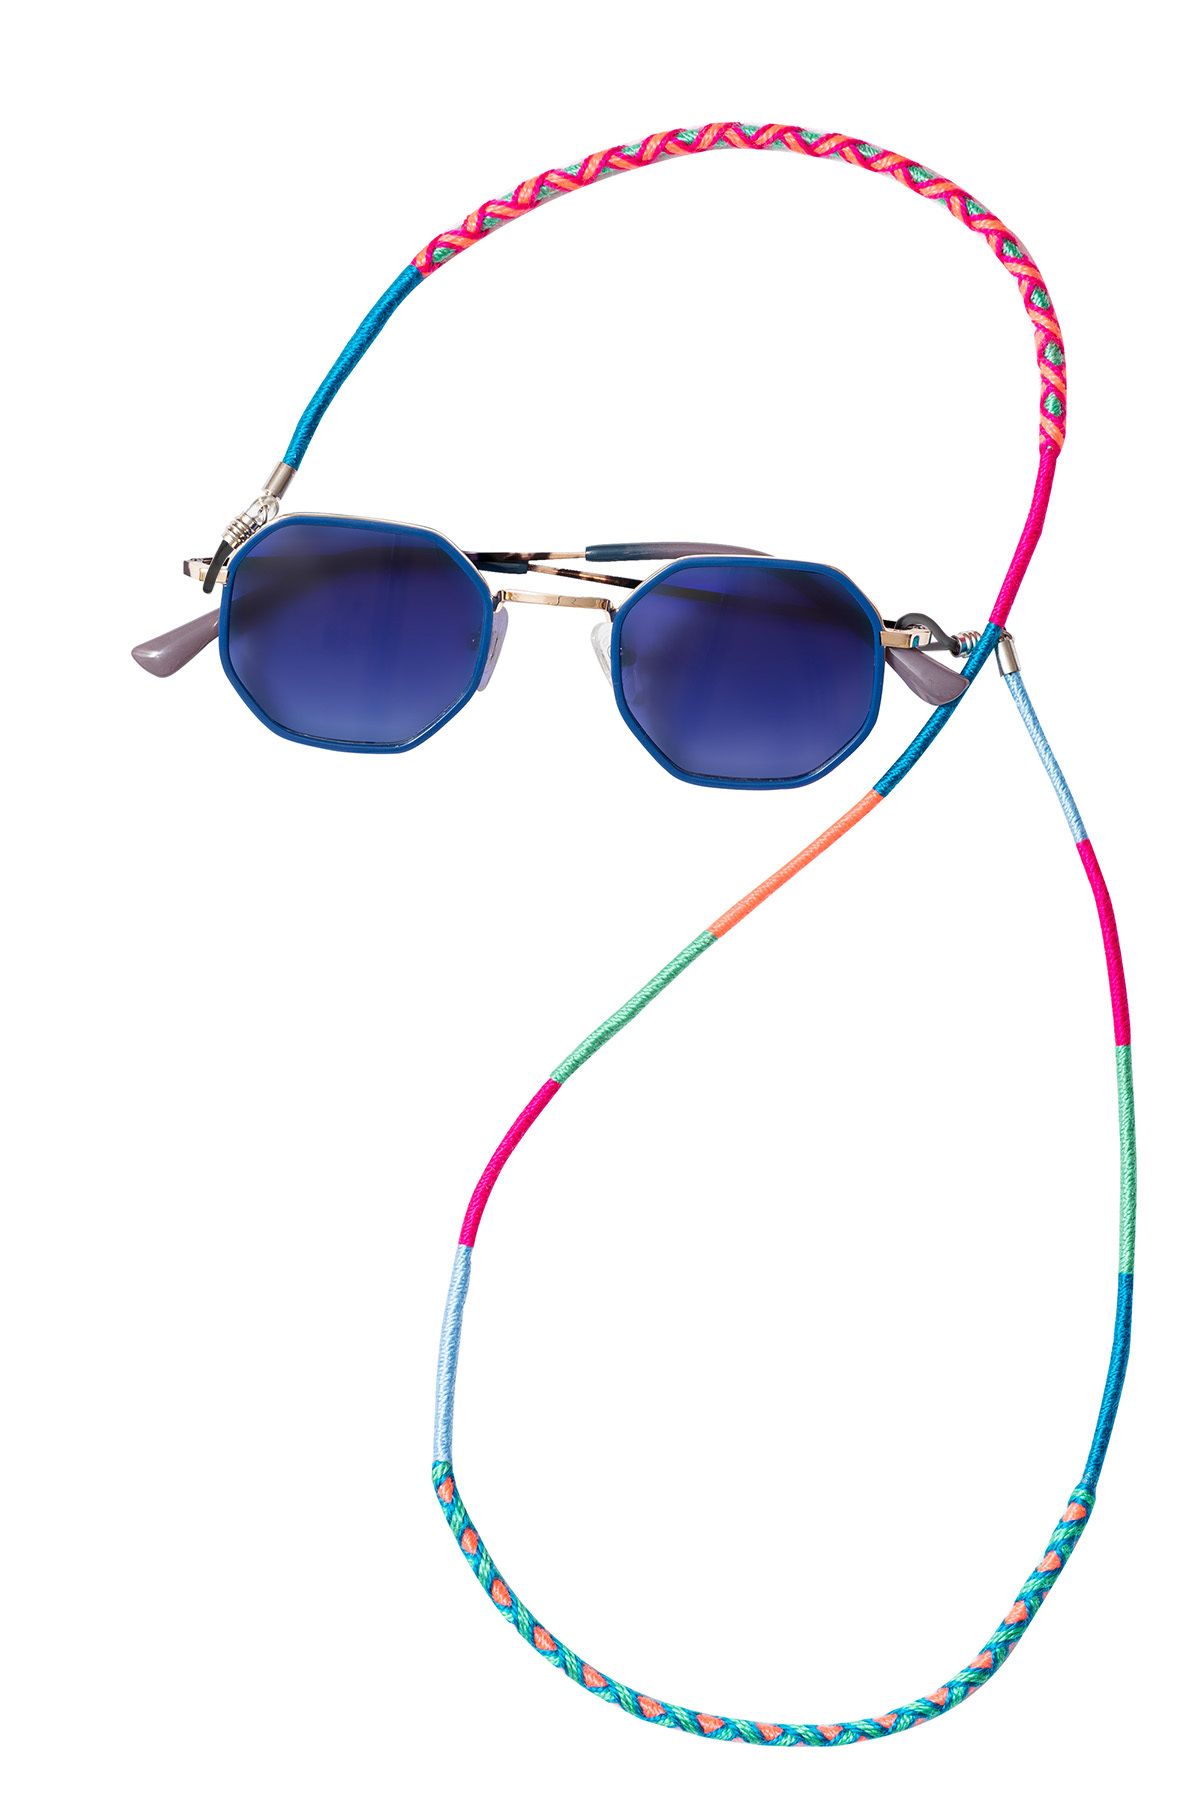 Hippi Raspberry Renkli 70 Cm El Emeği Örgülü Özel Tasarım Yapılı Unisex Gözlük Ipi Aksesuarı